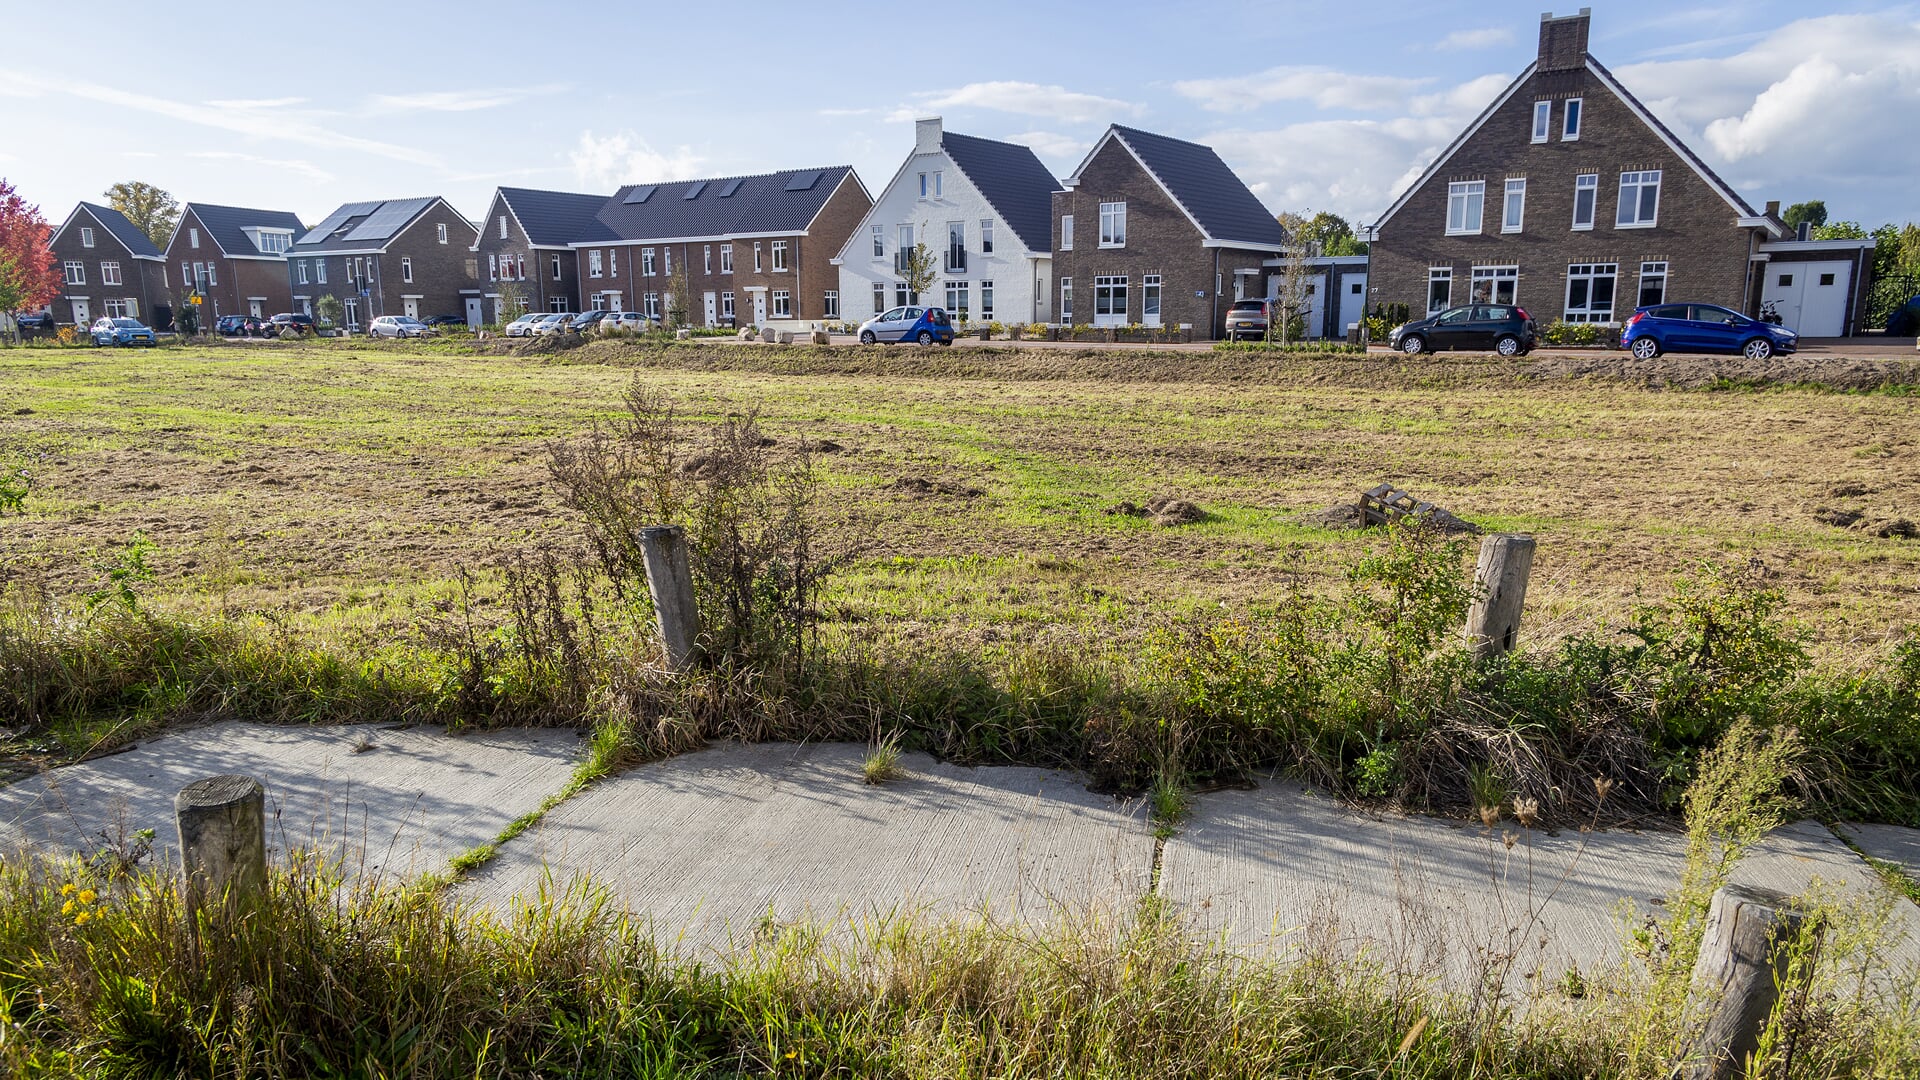 De gemeente Boxtel besloot vorig jaar dat de plannen voor nieuwbouwwijk Reigerskant konden worden aangepast. Zo komt er ruimte voor 32 sociale huurwoningen.